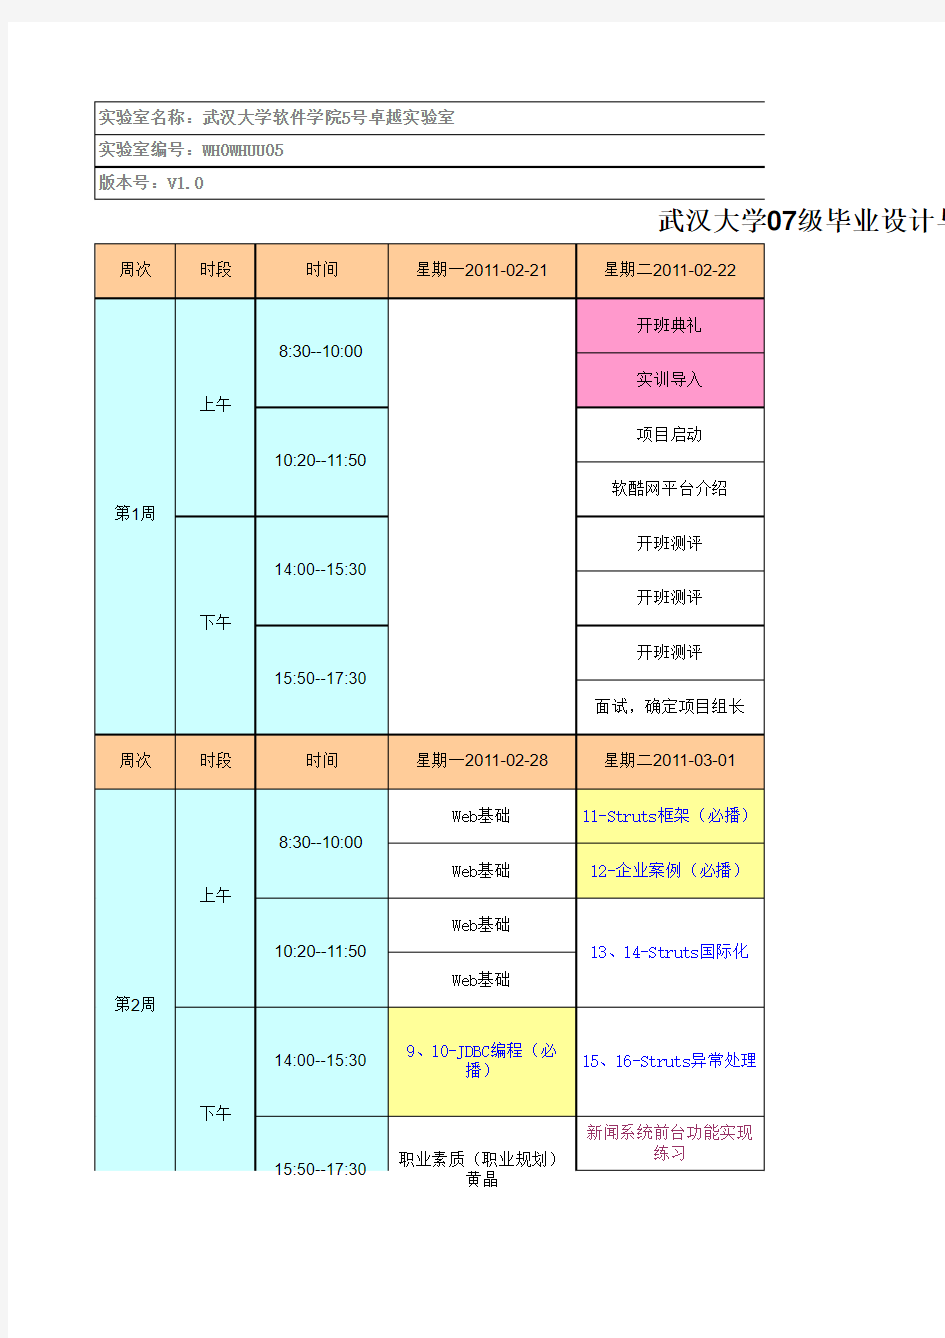 武汉大学软件学院07级毕业设计课表